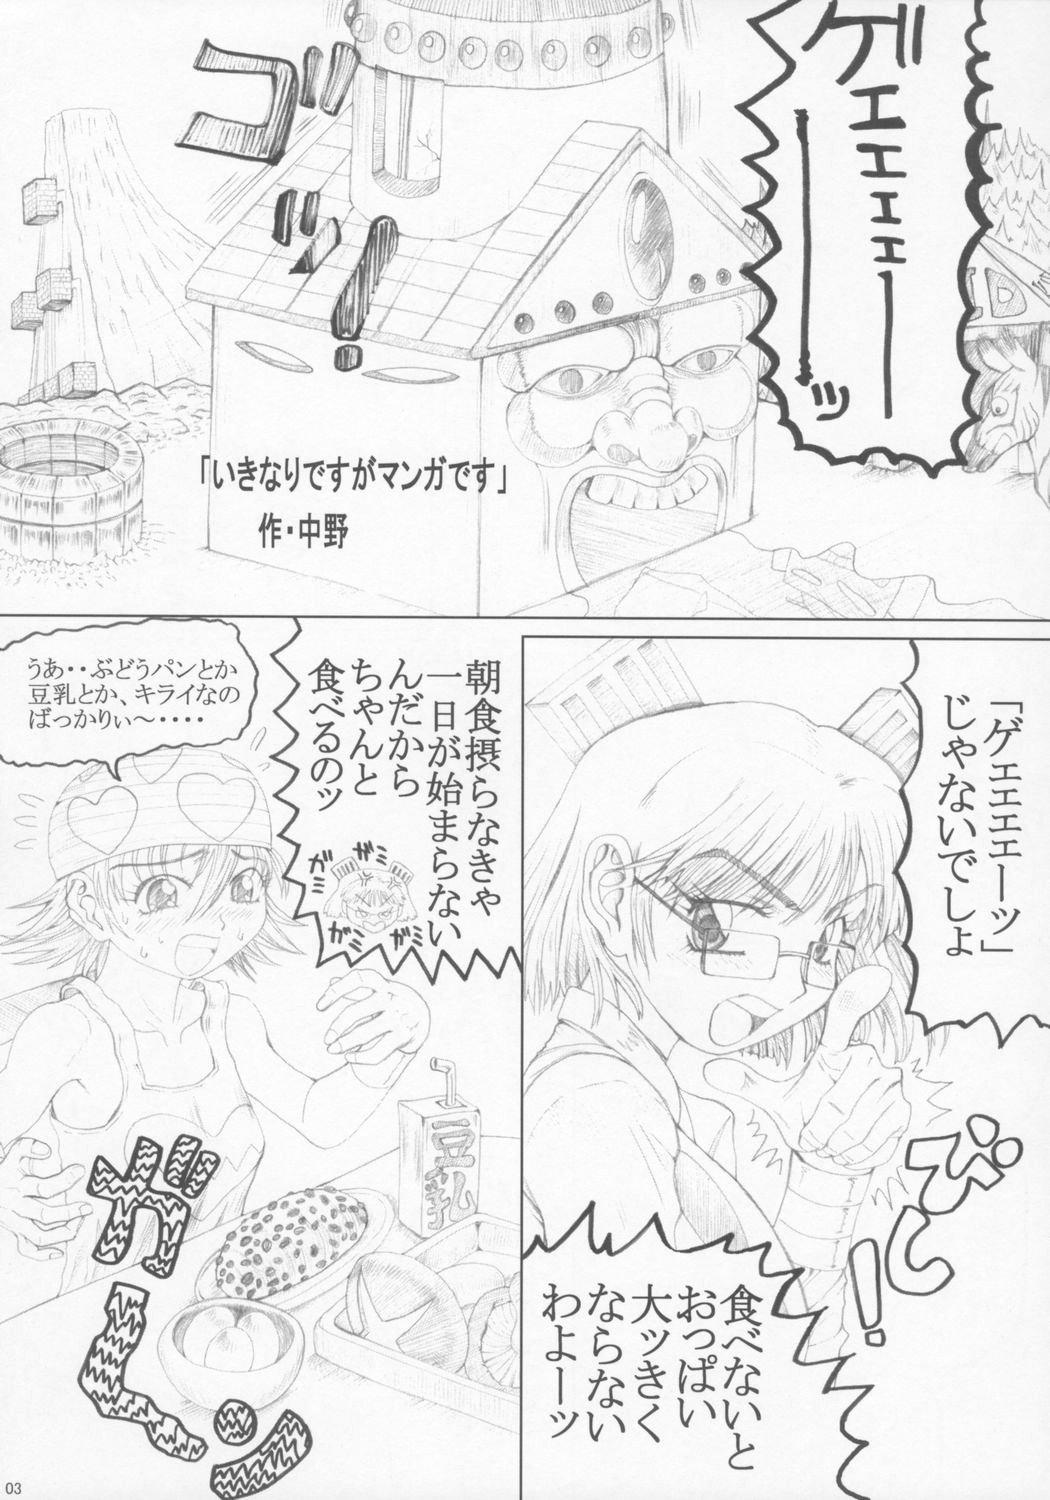 Long Misohito Spooning - Page 2